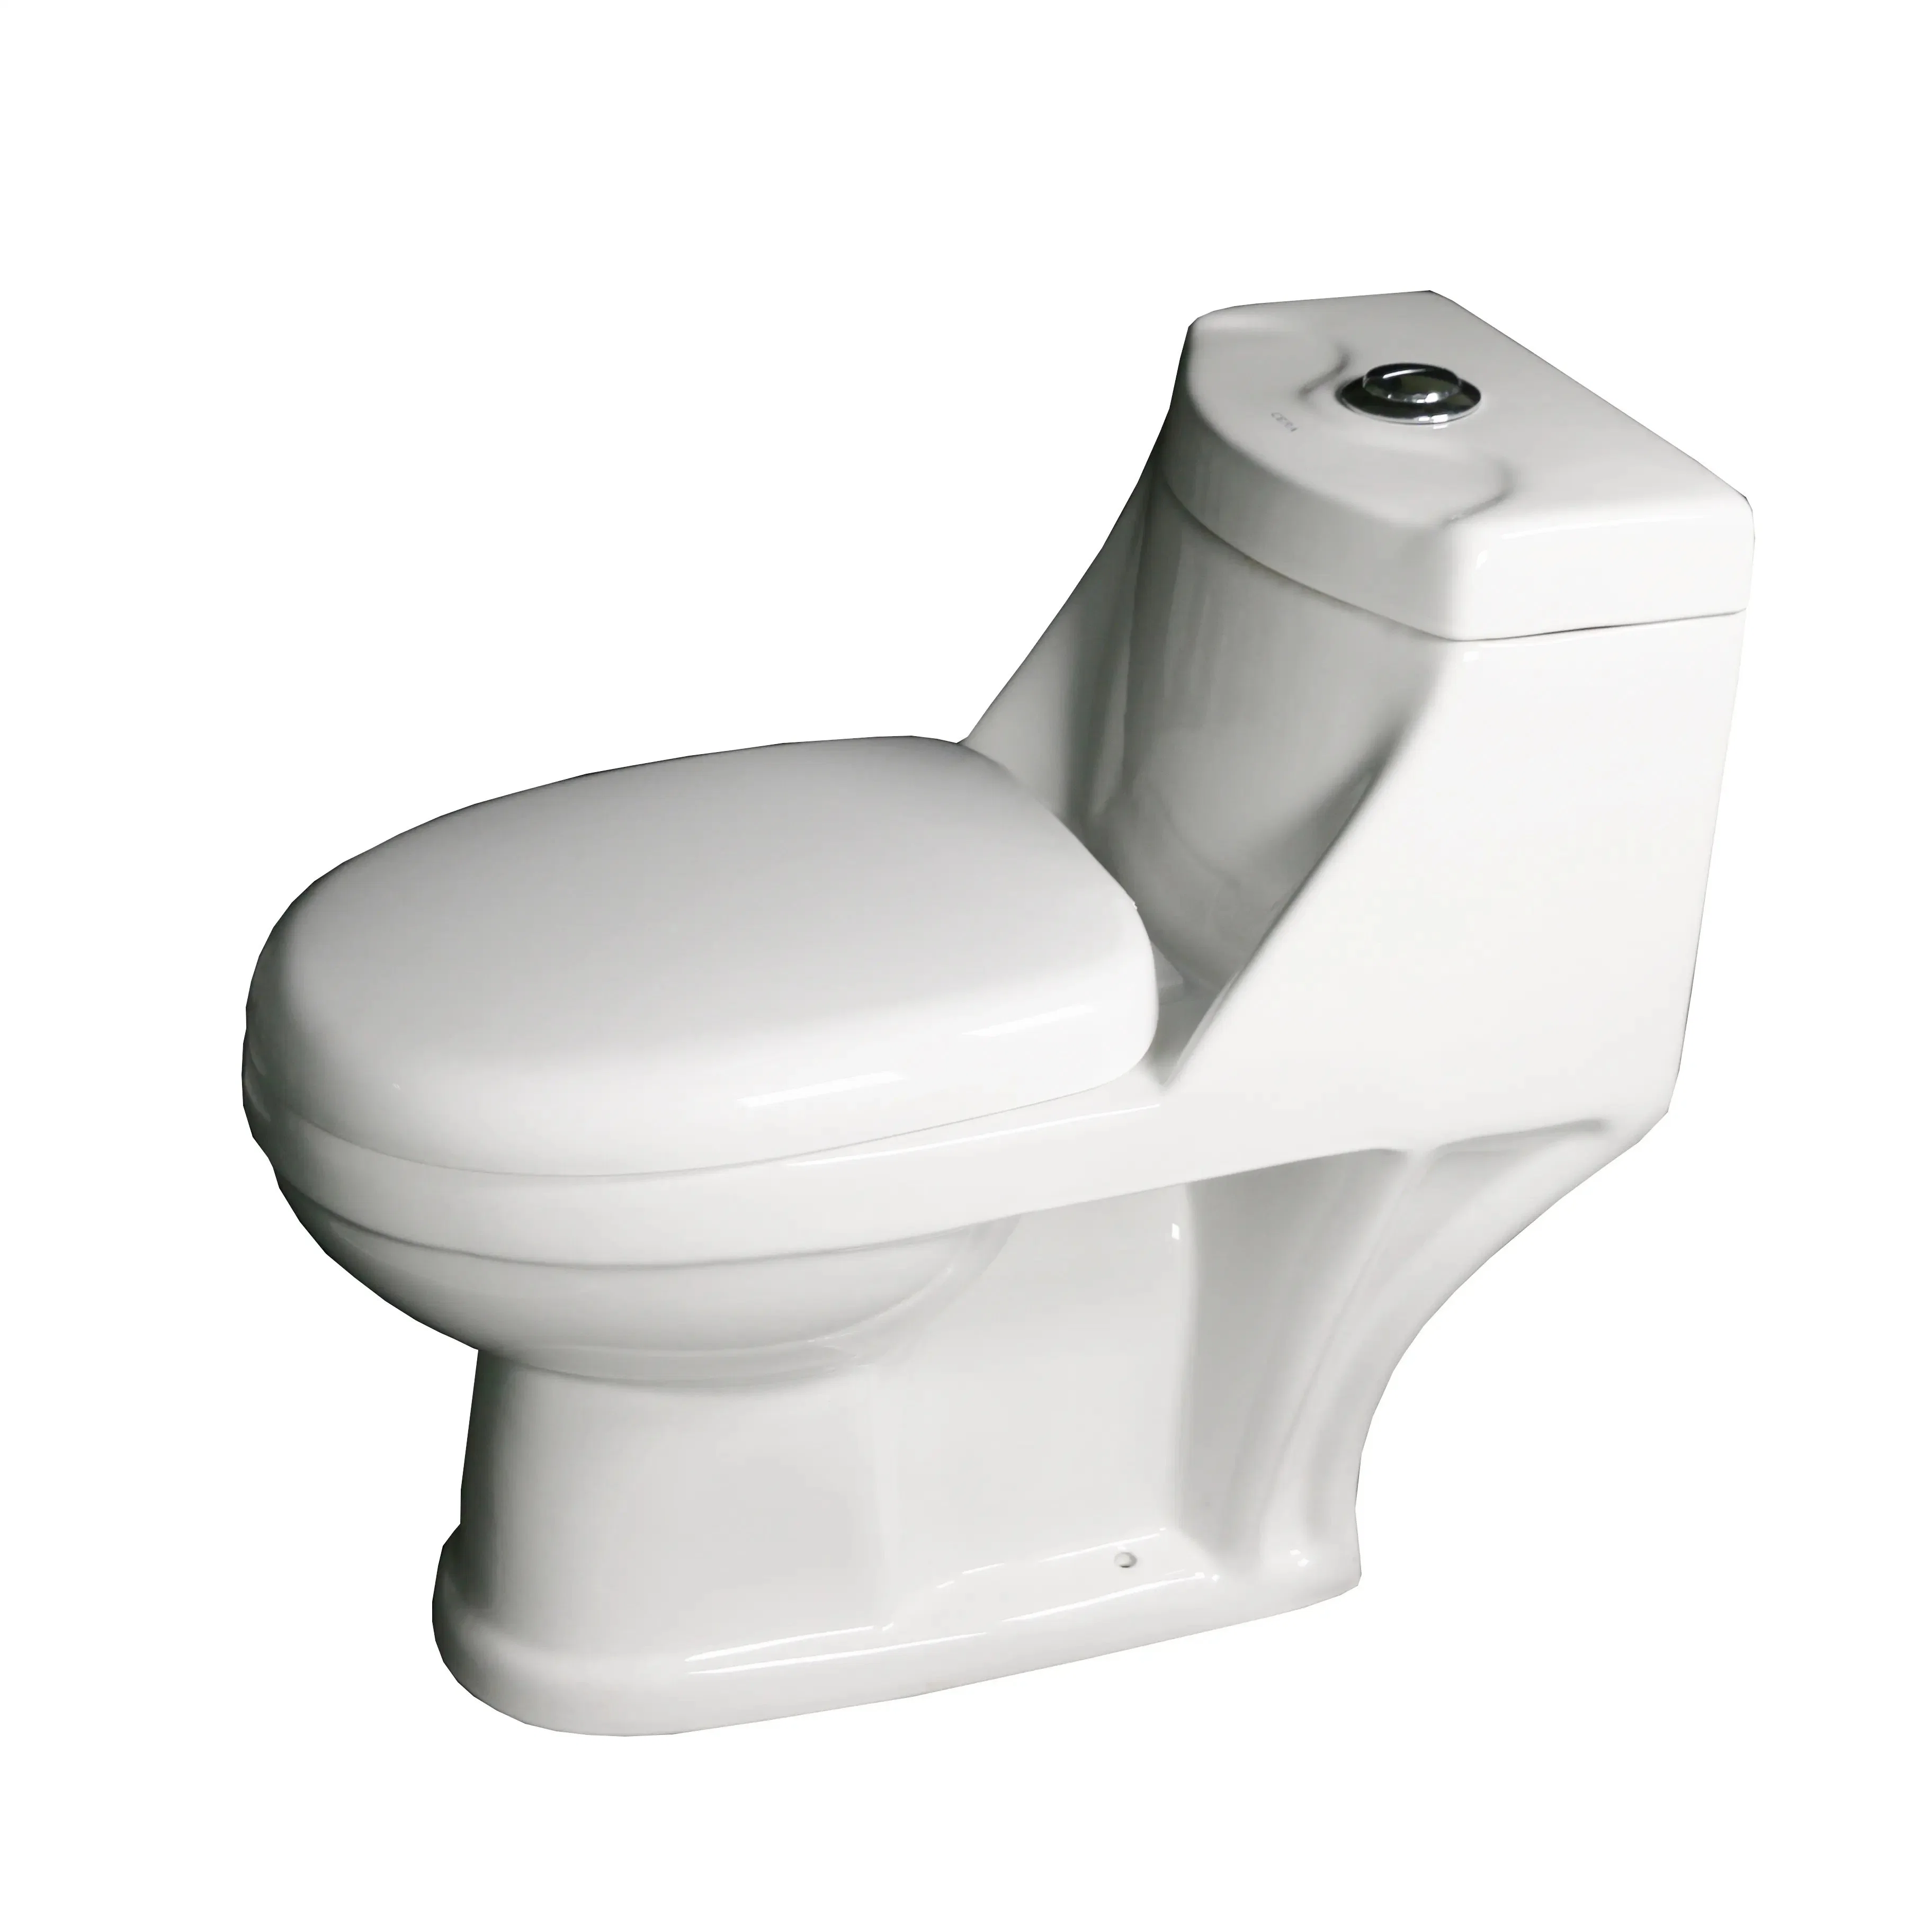 Moyen-Orient sanitaire Ware lavage P-Trap une pièce céramique Toilettes